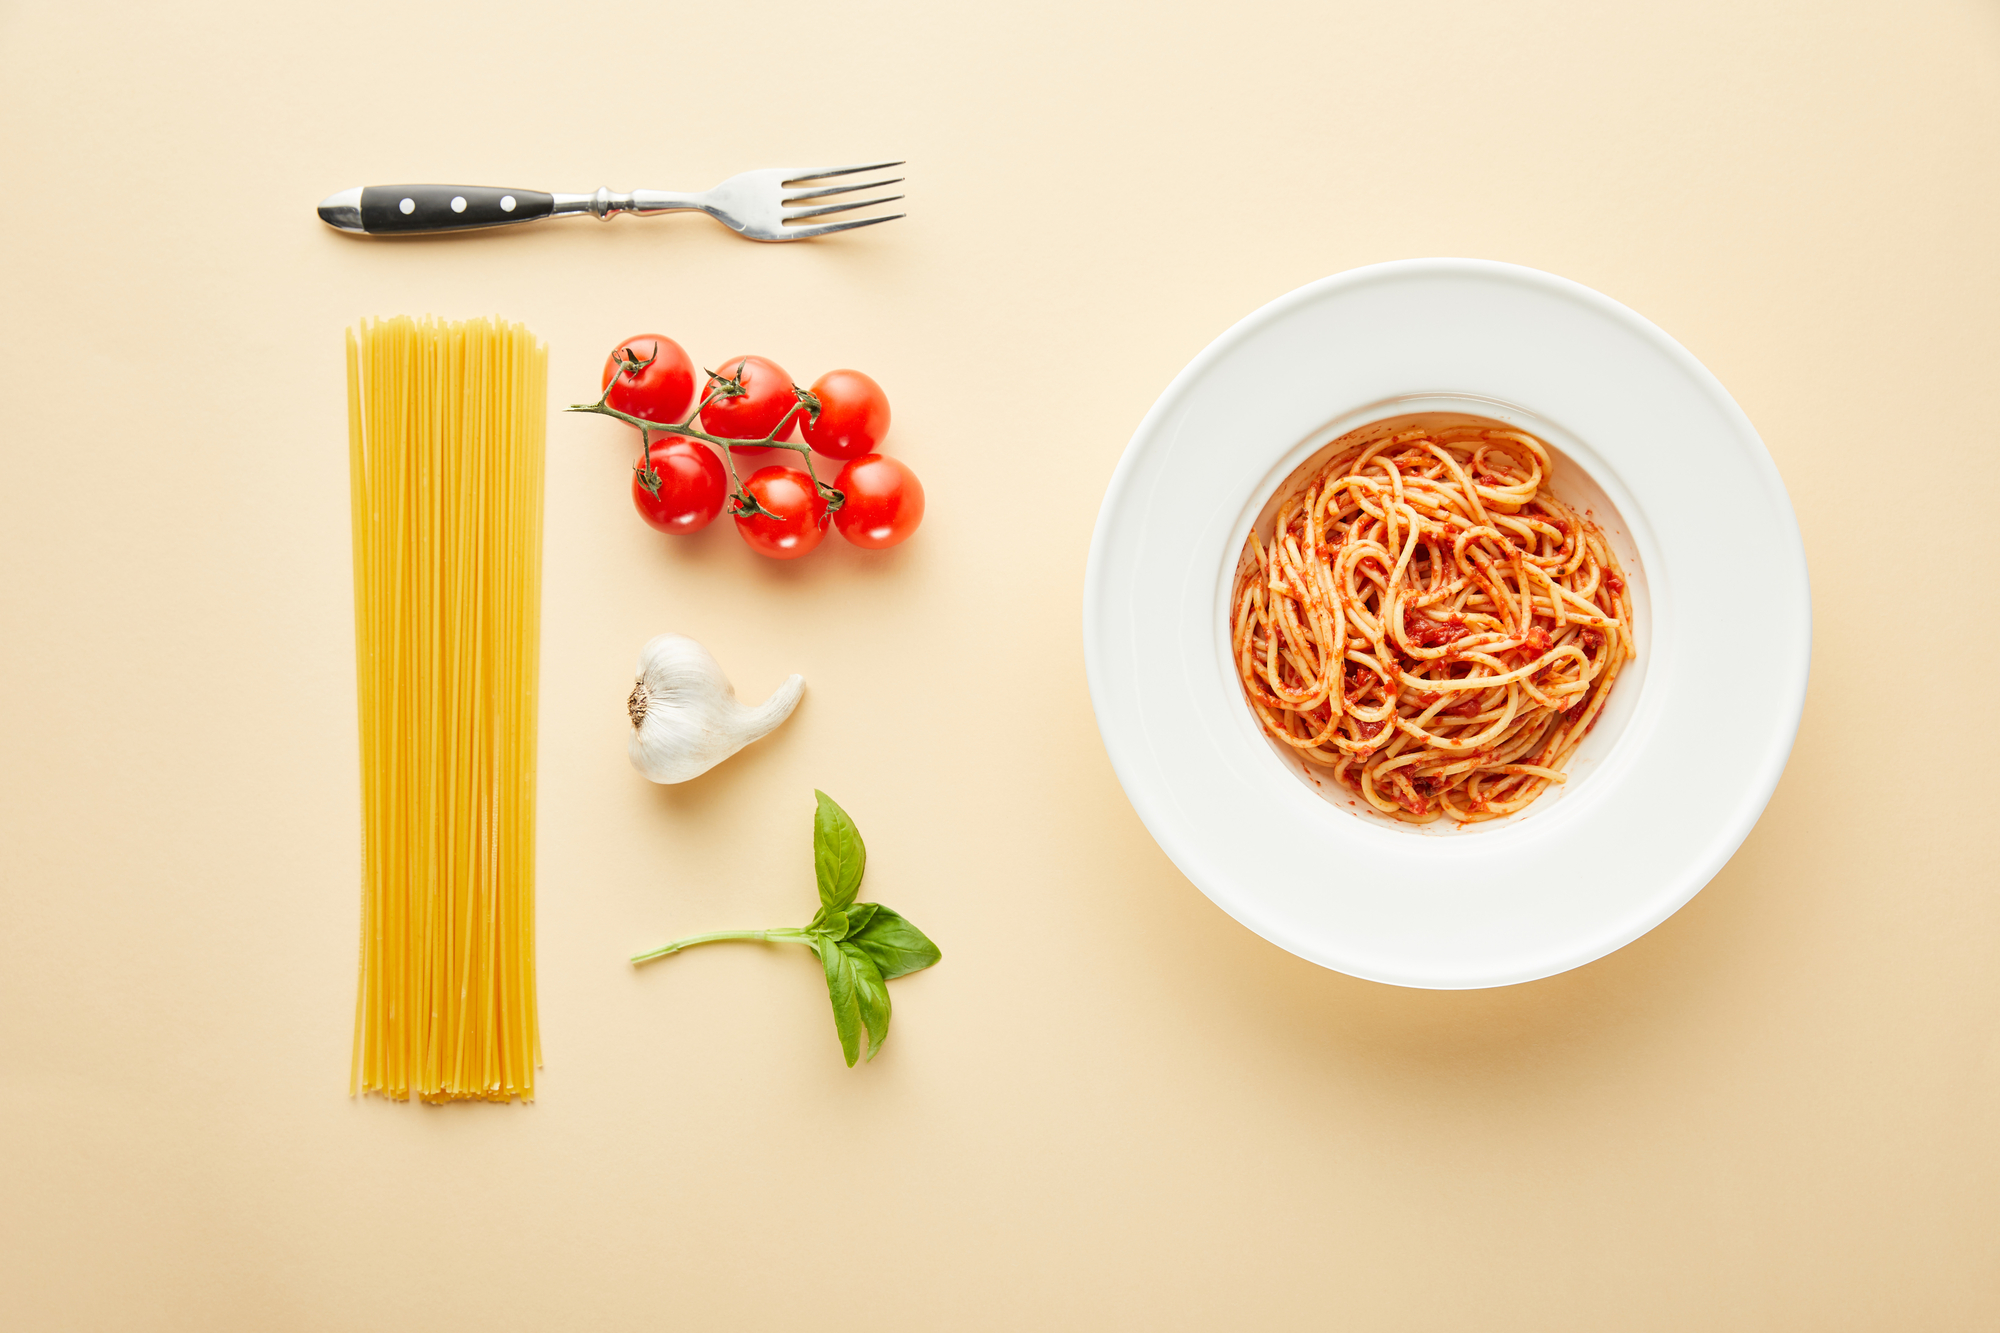 Piatto di spaghetti al pomodoro; sulla sinistra gli ingredienti: spaghetti crudi, pomodorini, aglio, basilico e una forchetta